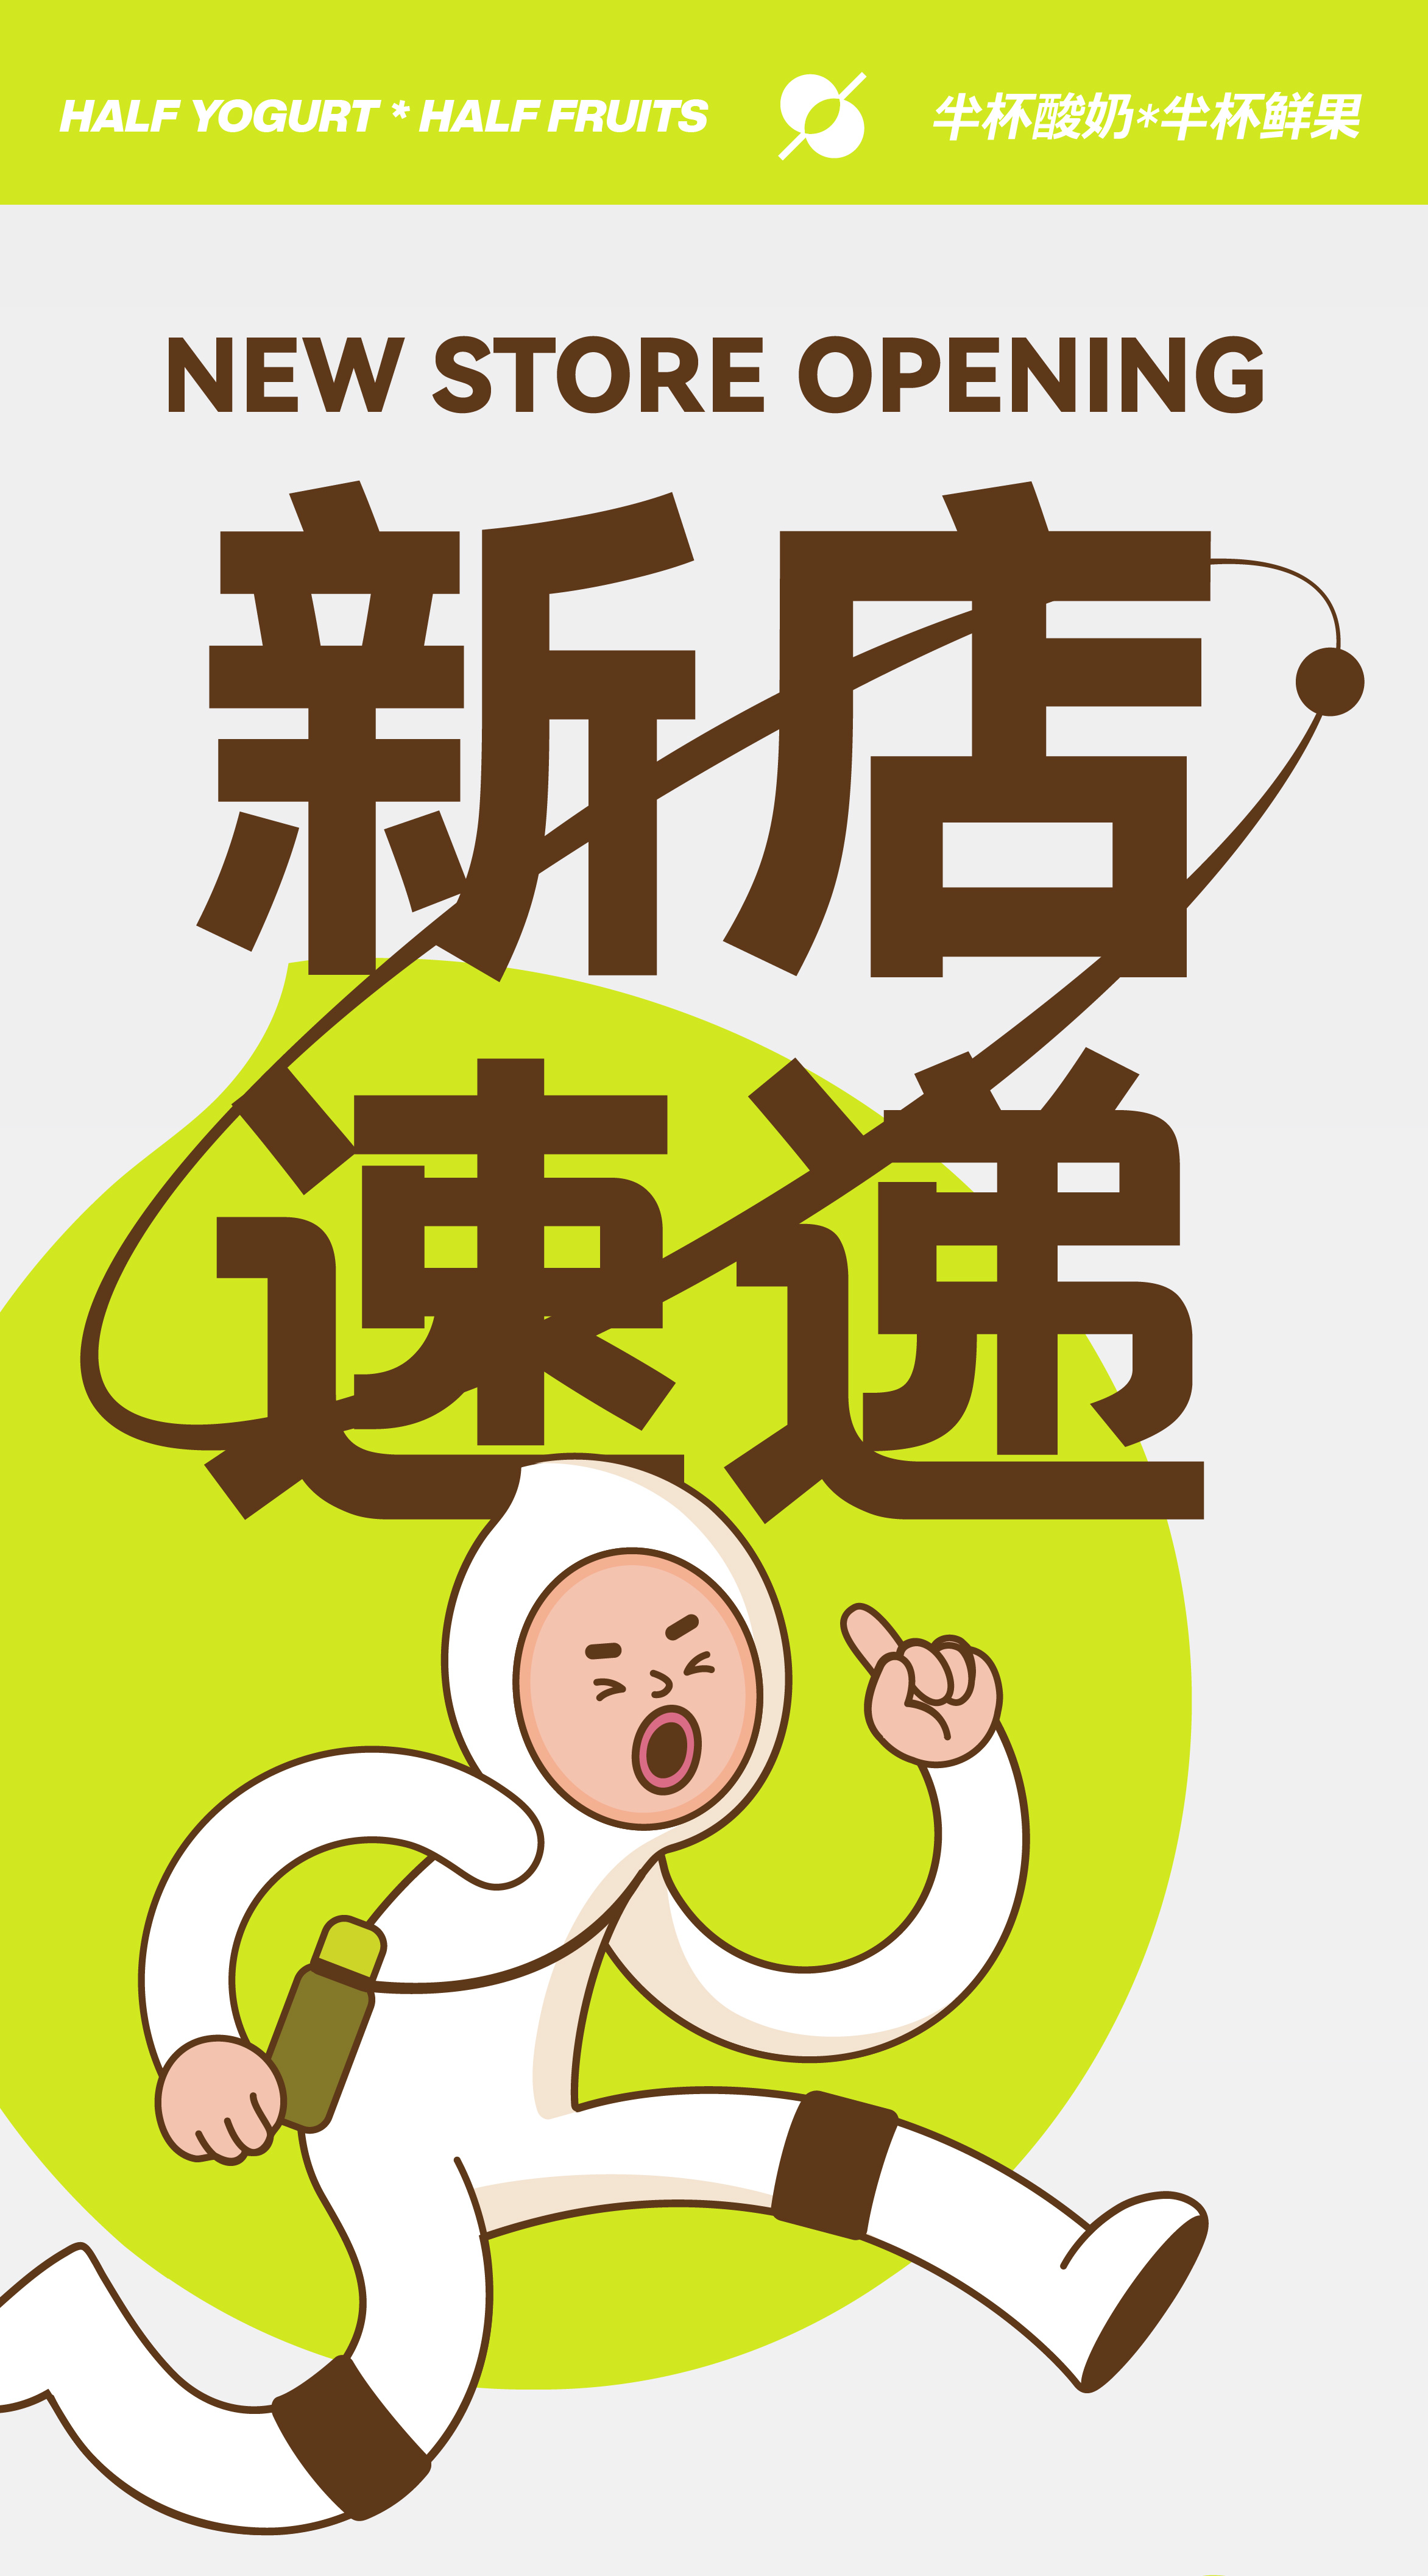 龙珠体育-奈雪的茶联合上海市卫健委上线首批“营养选择”标识 推动新茶饮迈入健康时代 | Foodaily每日食品